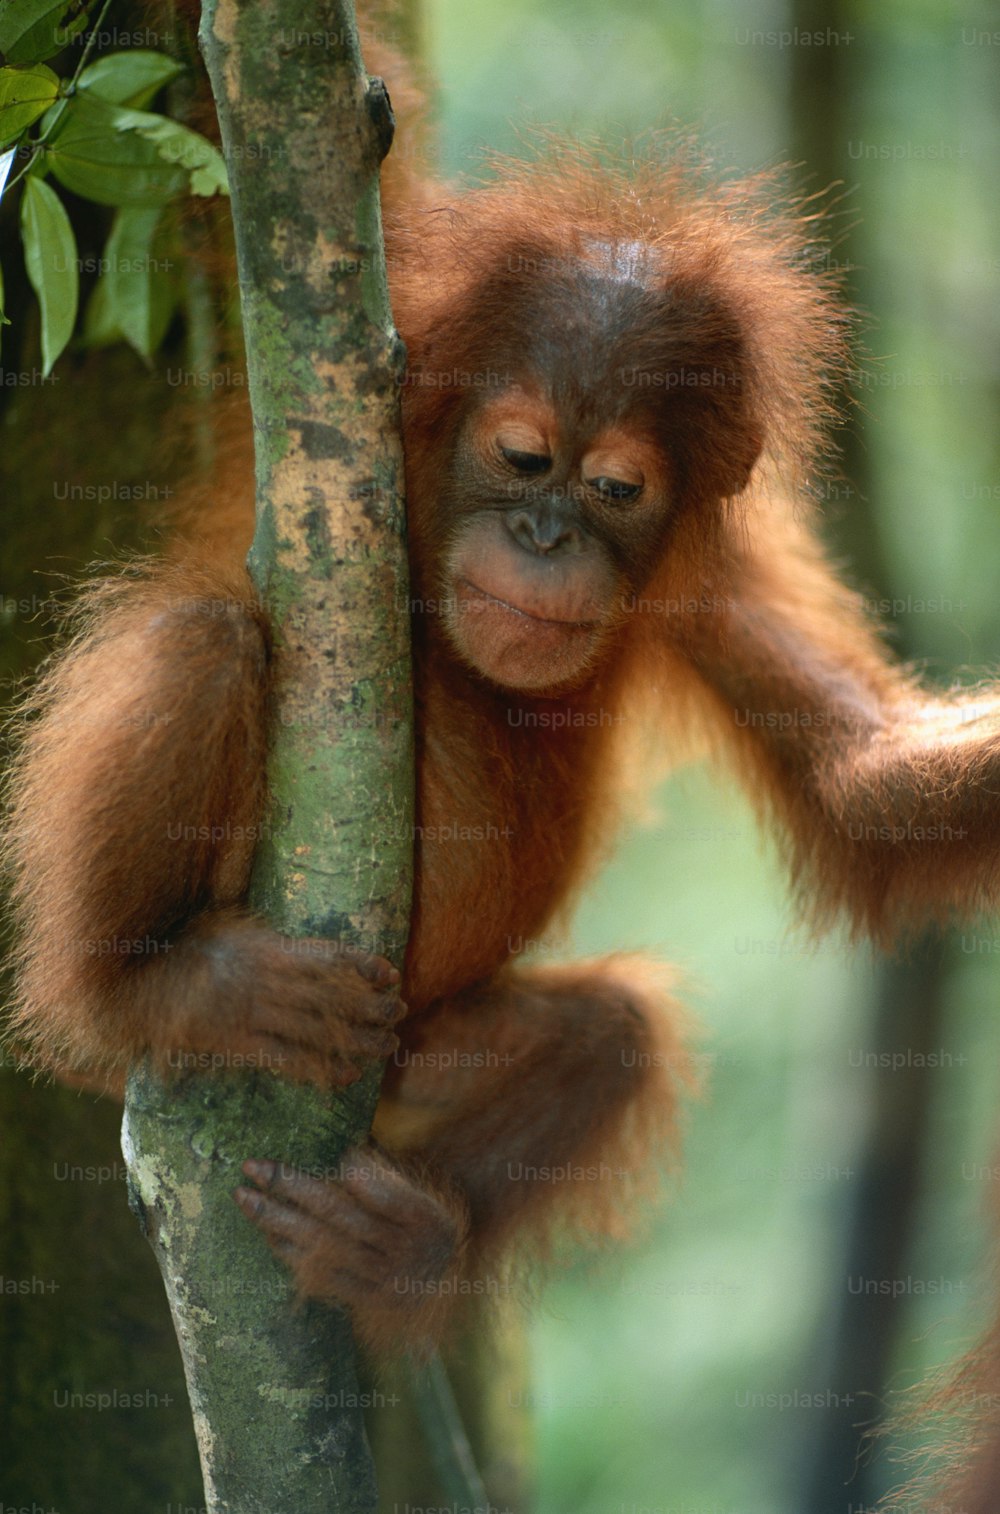 Un bébé orang-outan suspendu à une branche d’arbre